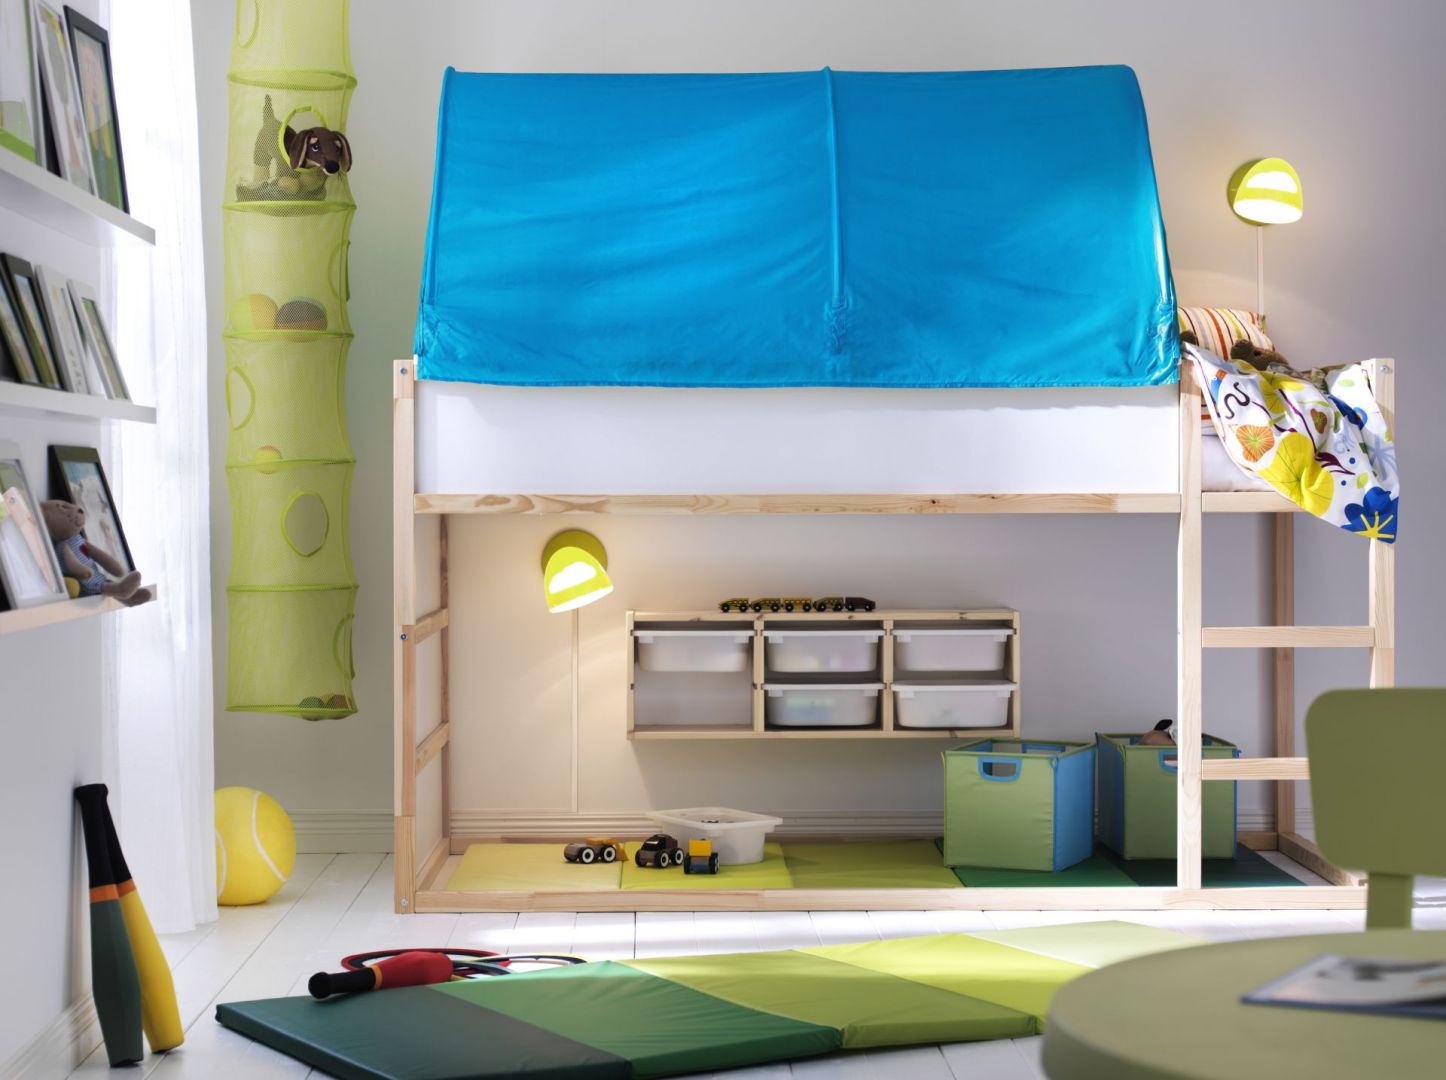 Łóżko na antresoli to połączenie przyjemnego z pożytecznym. Wygodnie się nim śpi, zaś pod materacem można się świetnie bawić. Fot. IKEA